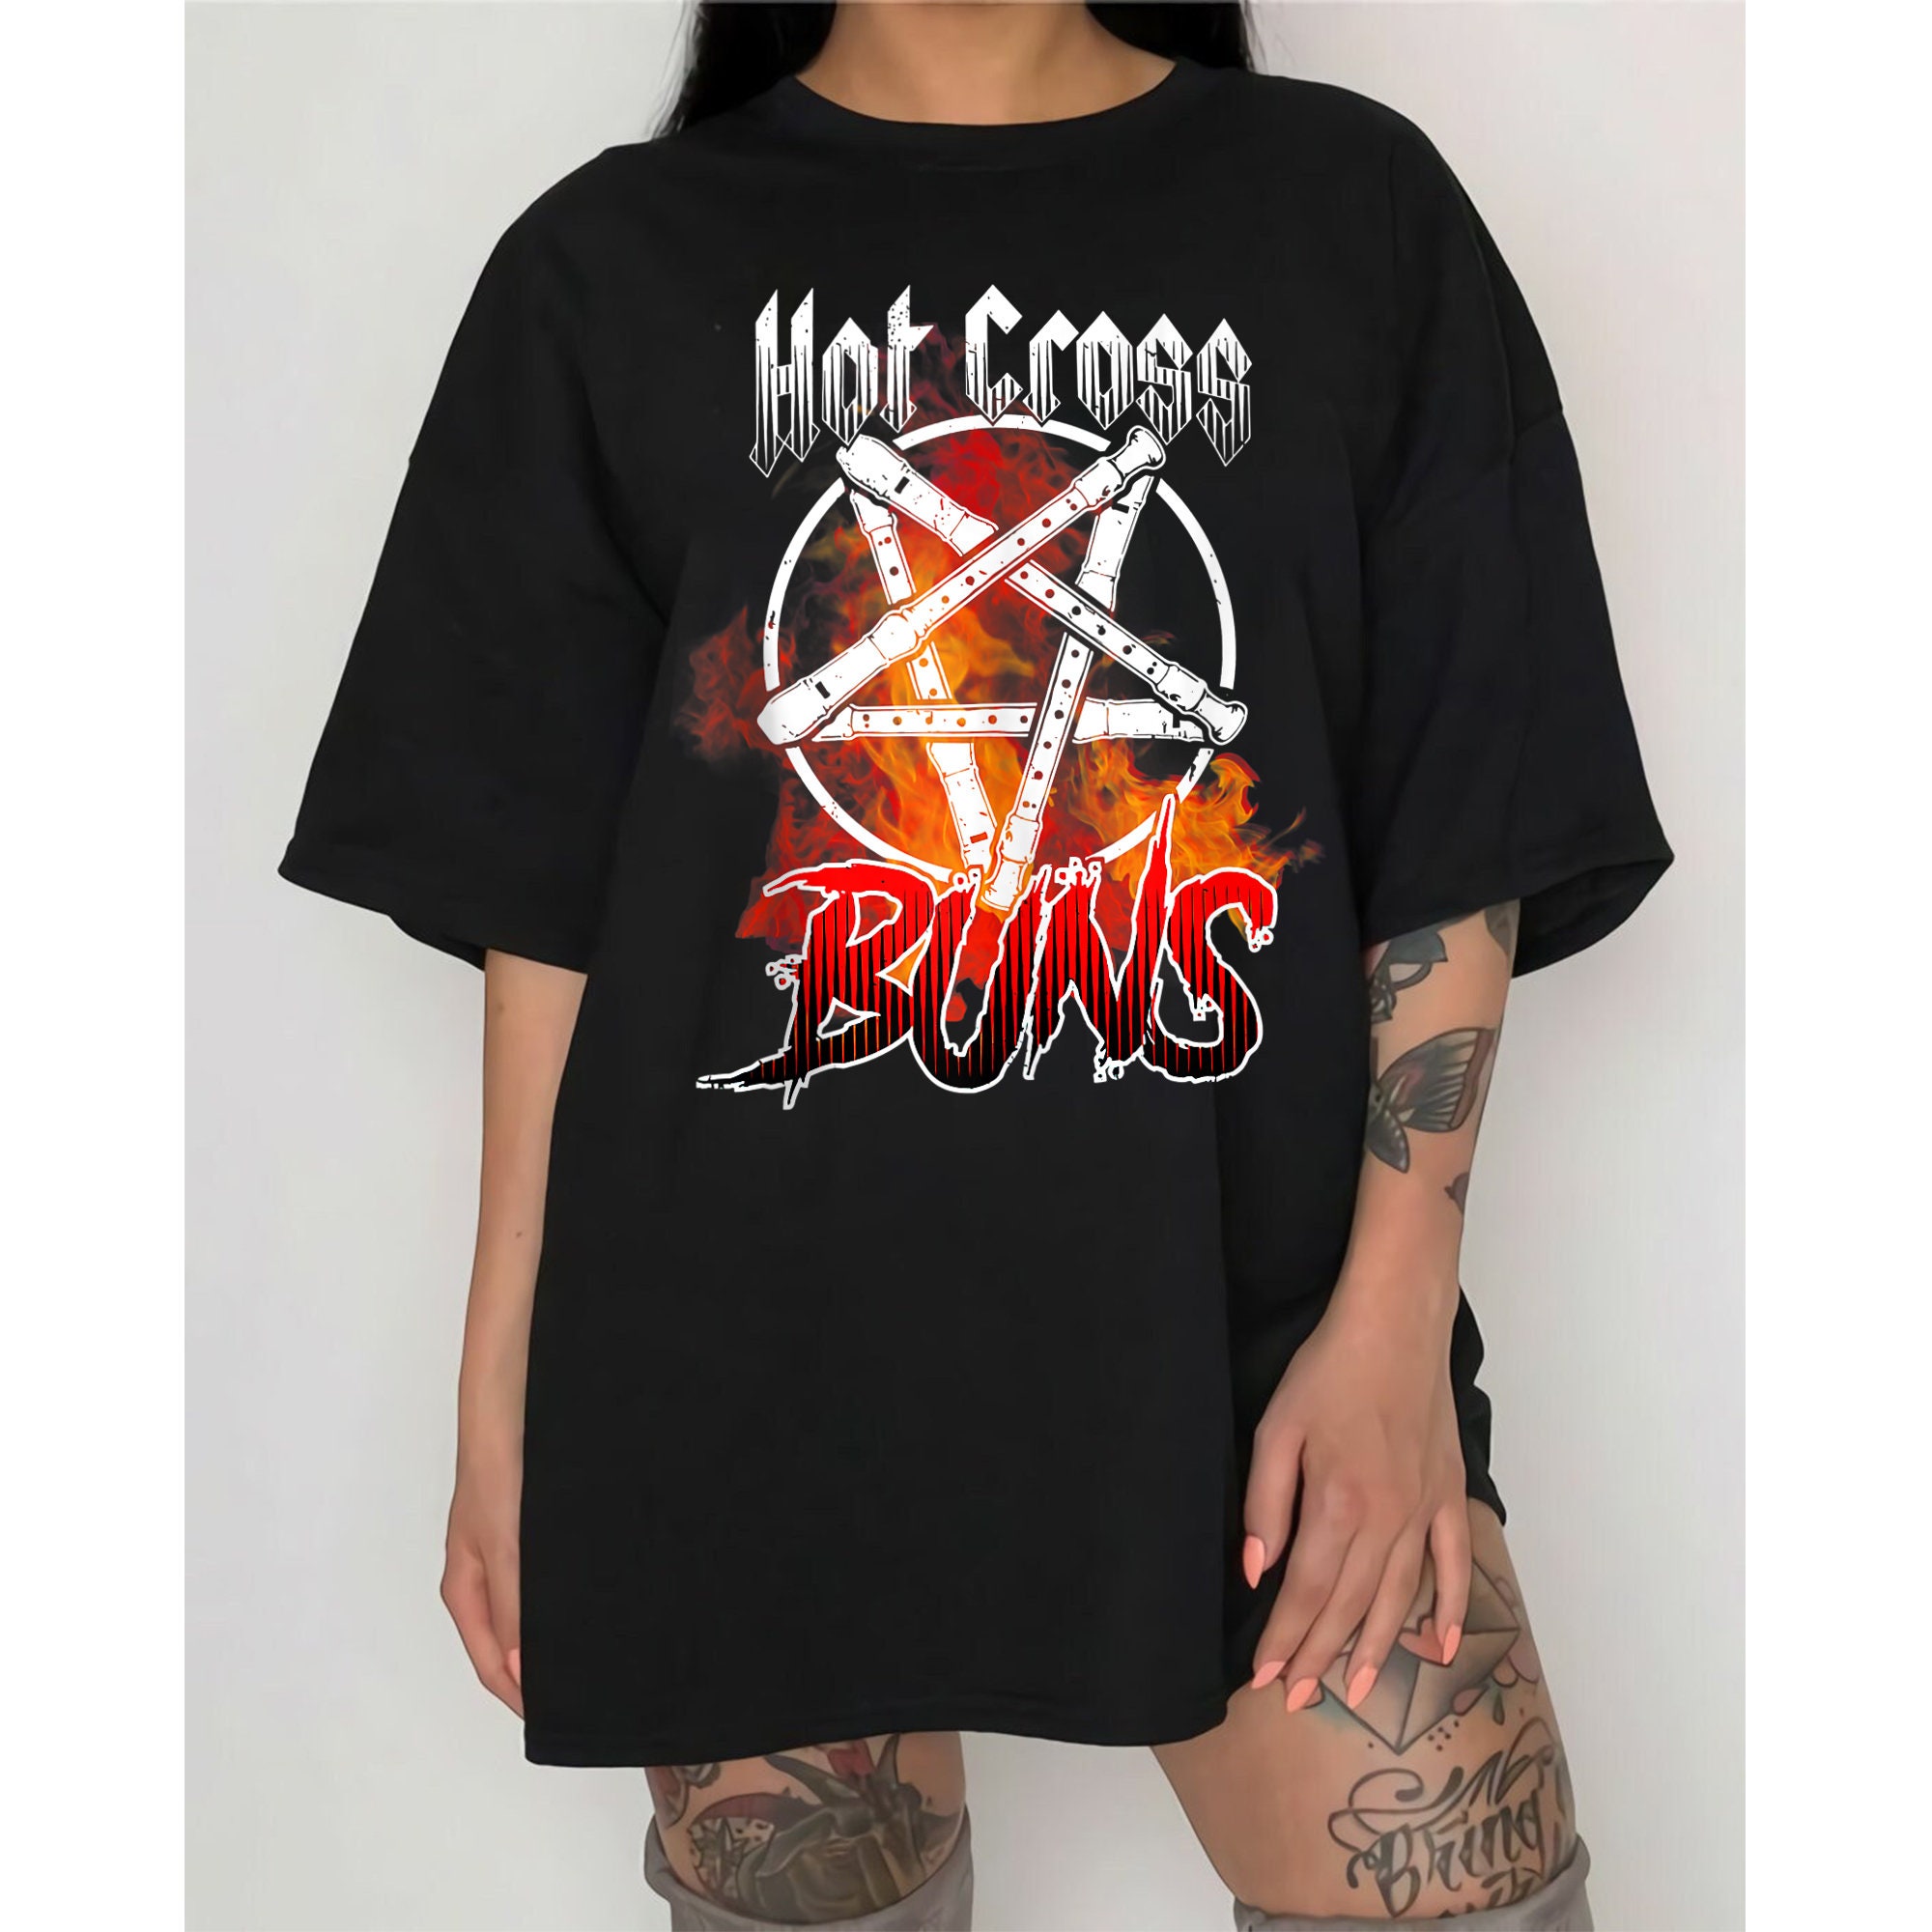 Hot Cross Buns Art Unisex T-Shirt